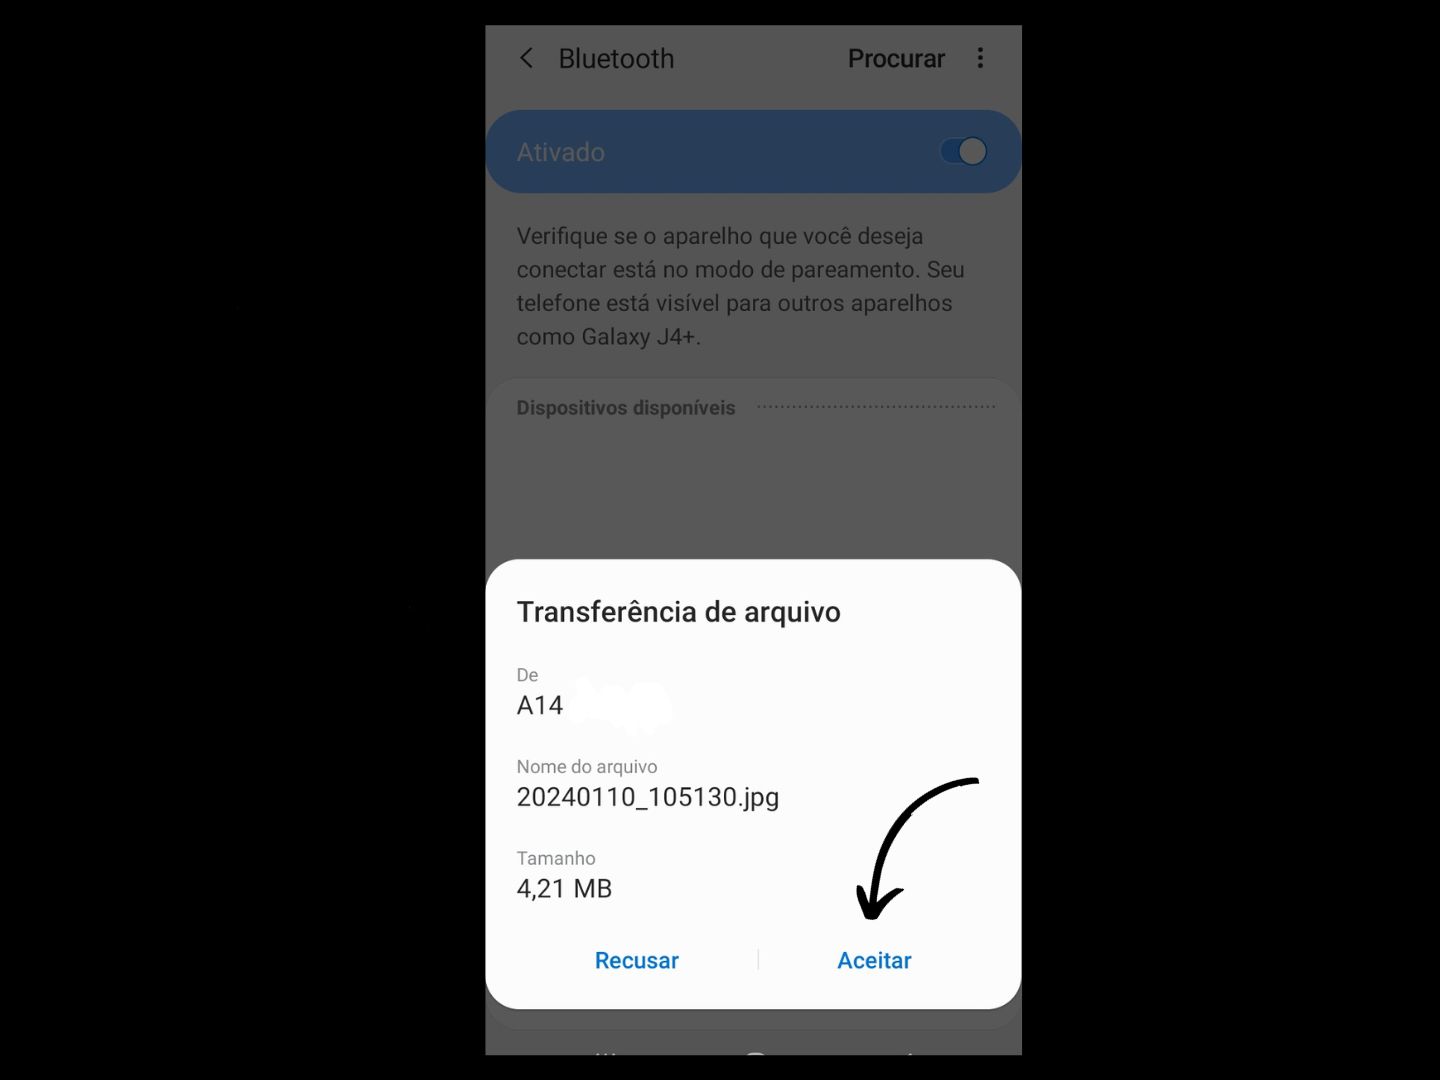 Imagem mostra seta apontando aonde você deve clicar para aceitar a solicitação ao enviar arquivo via Bluetooth.